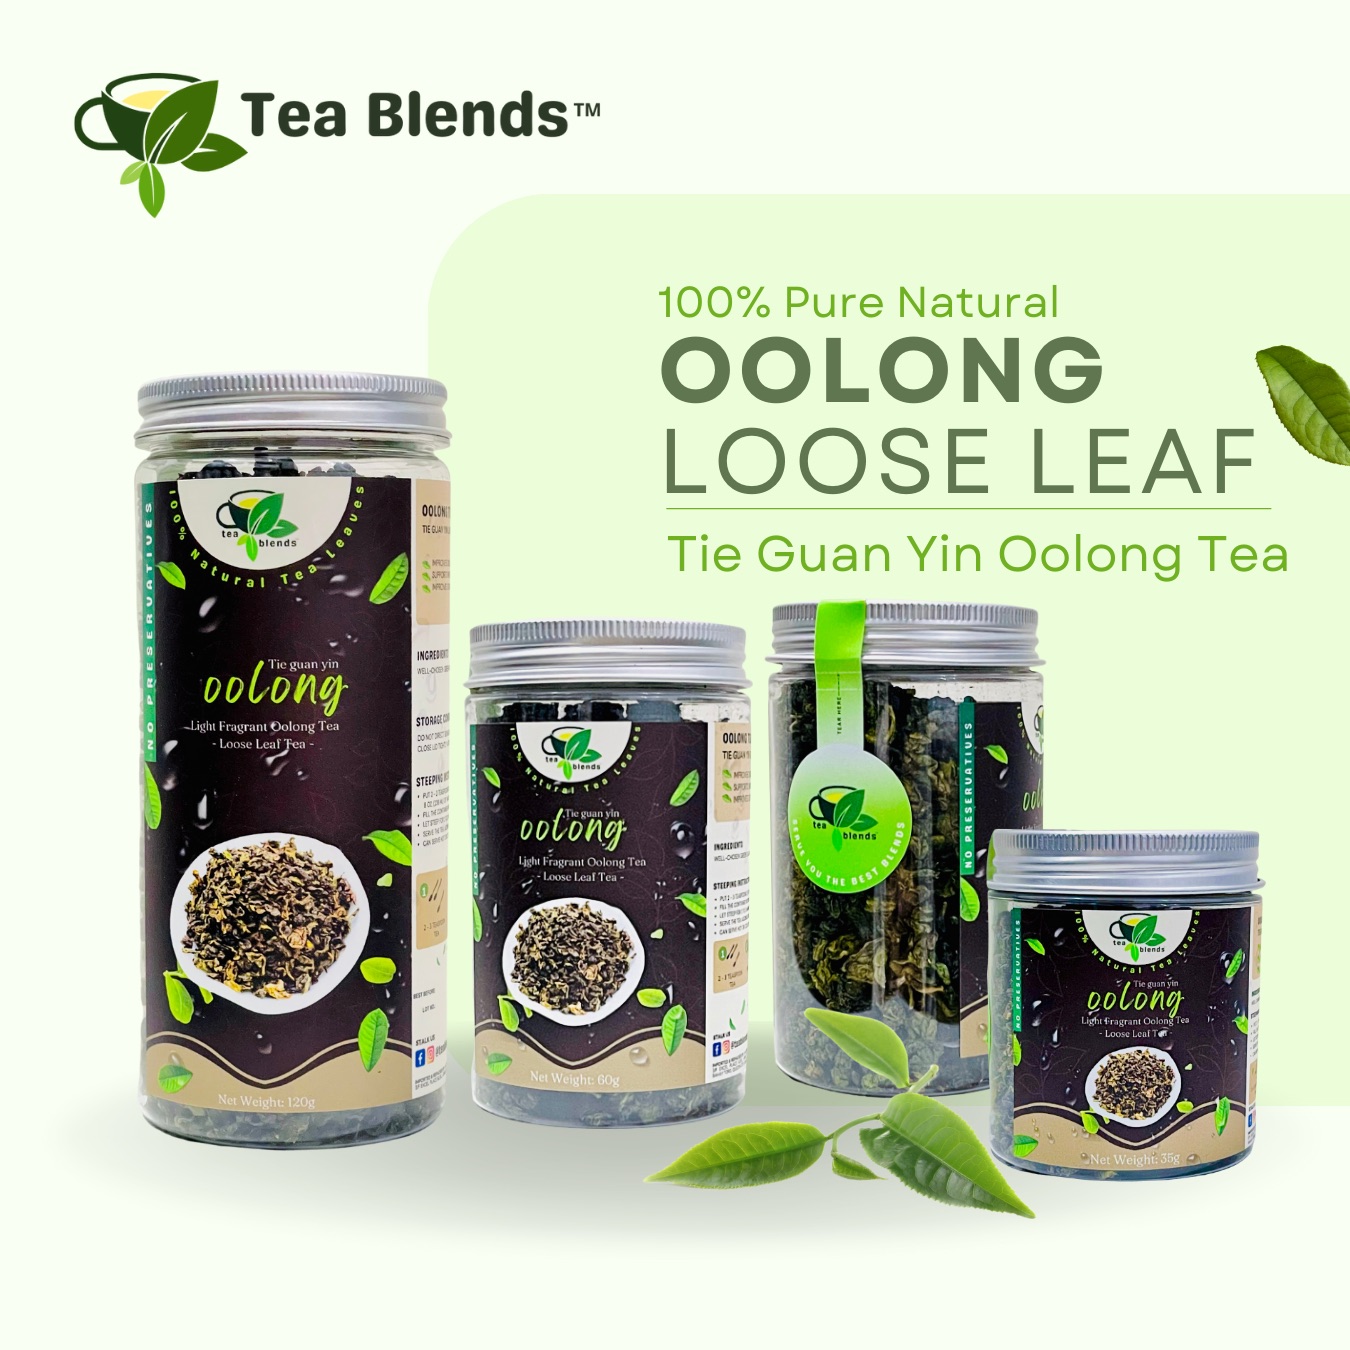 Tie Guan Yin Oolong Tea Loose Leaf